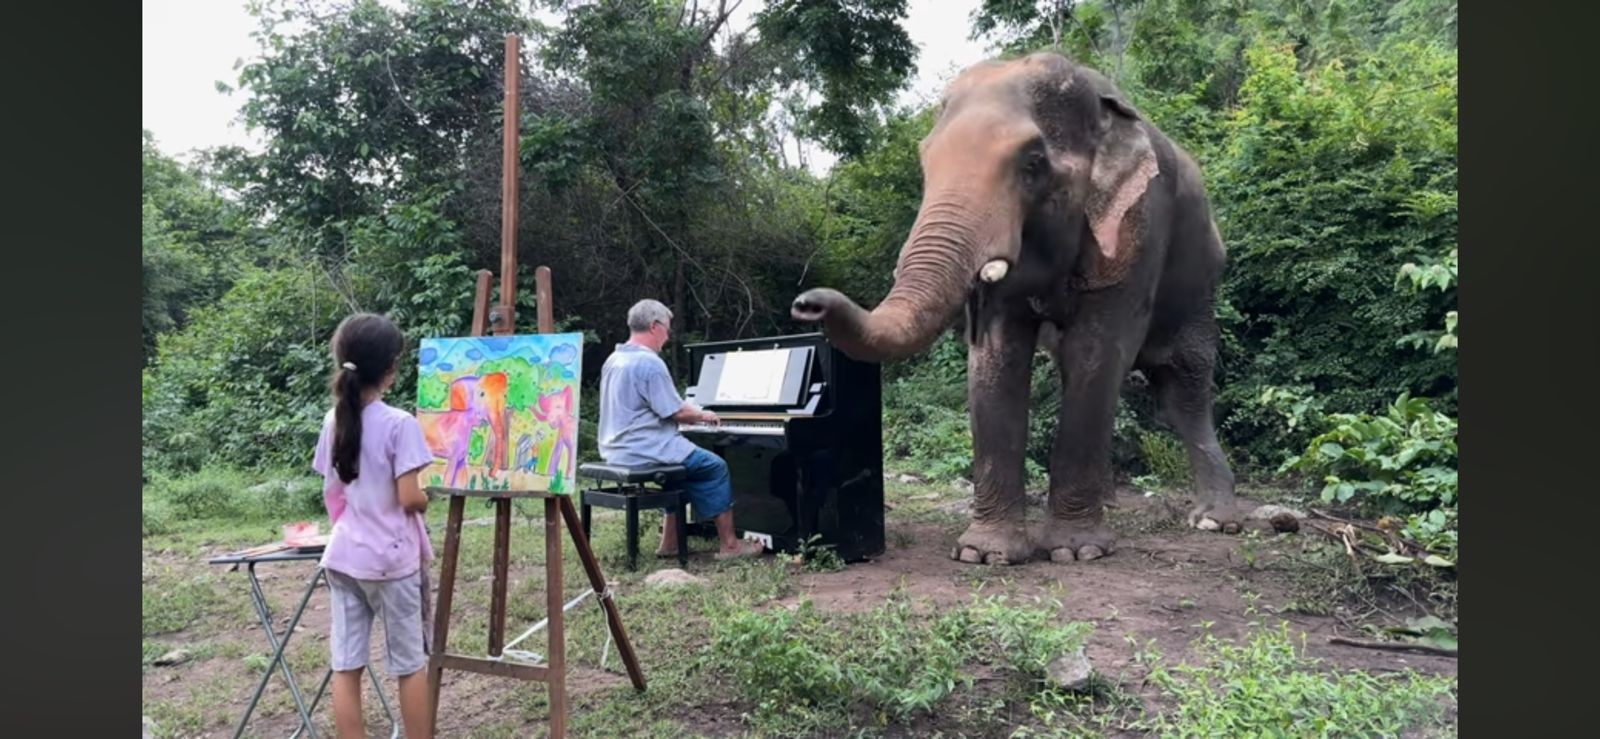 Paul toca piano para elefante, enquanto filha faz desenho do animal — Foto: Reprodução